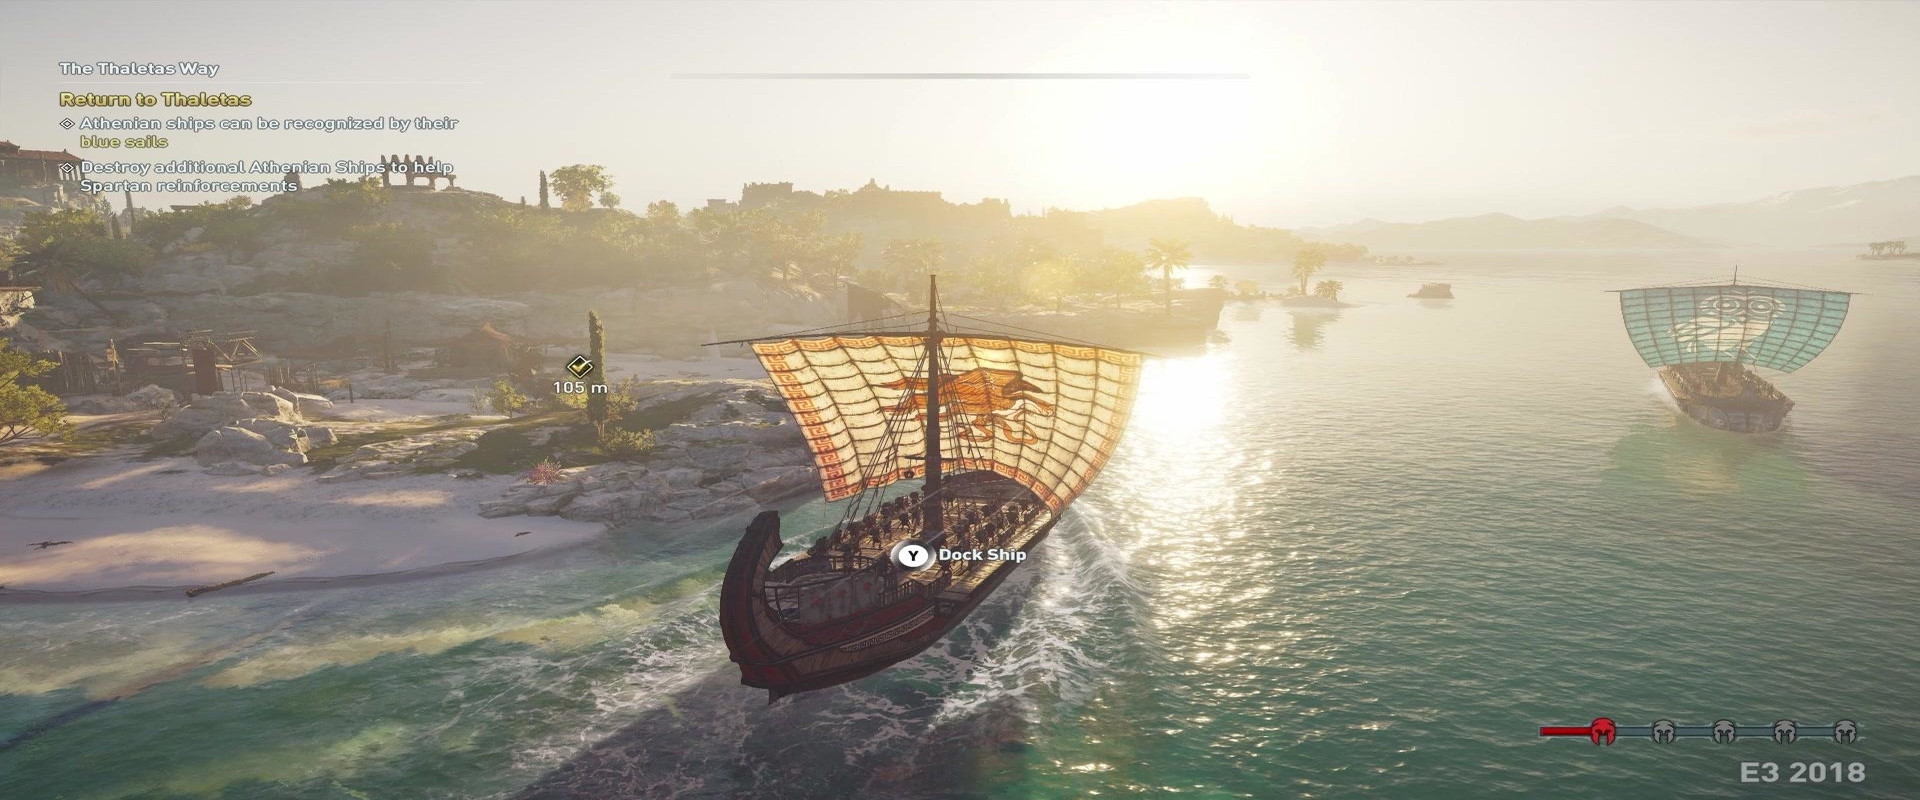 Új képek szivárogtak ki az Assassin's Creed Odyssey-ről